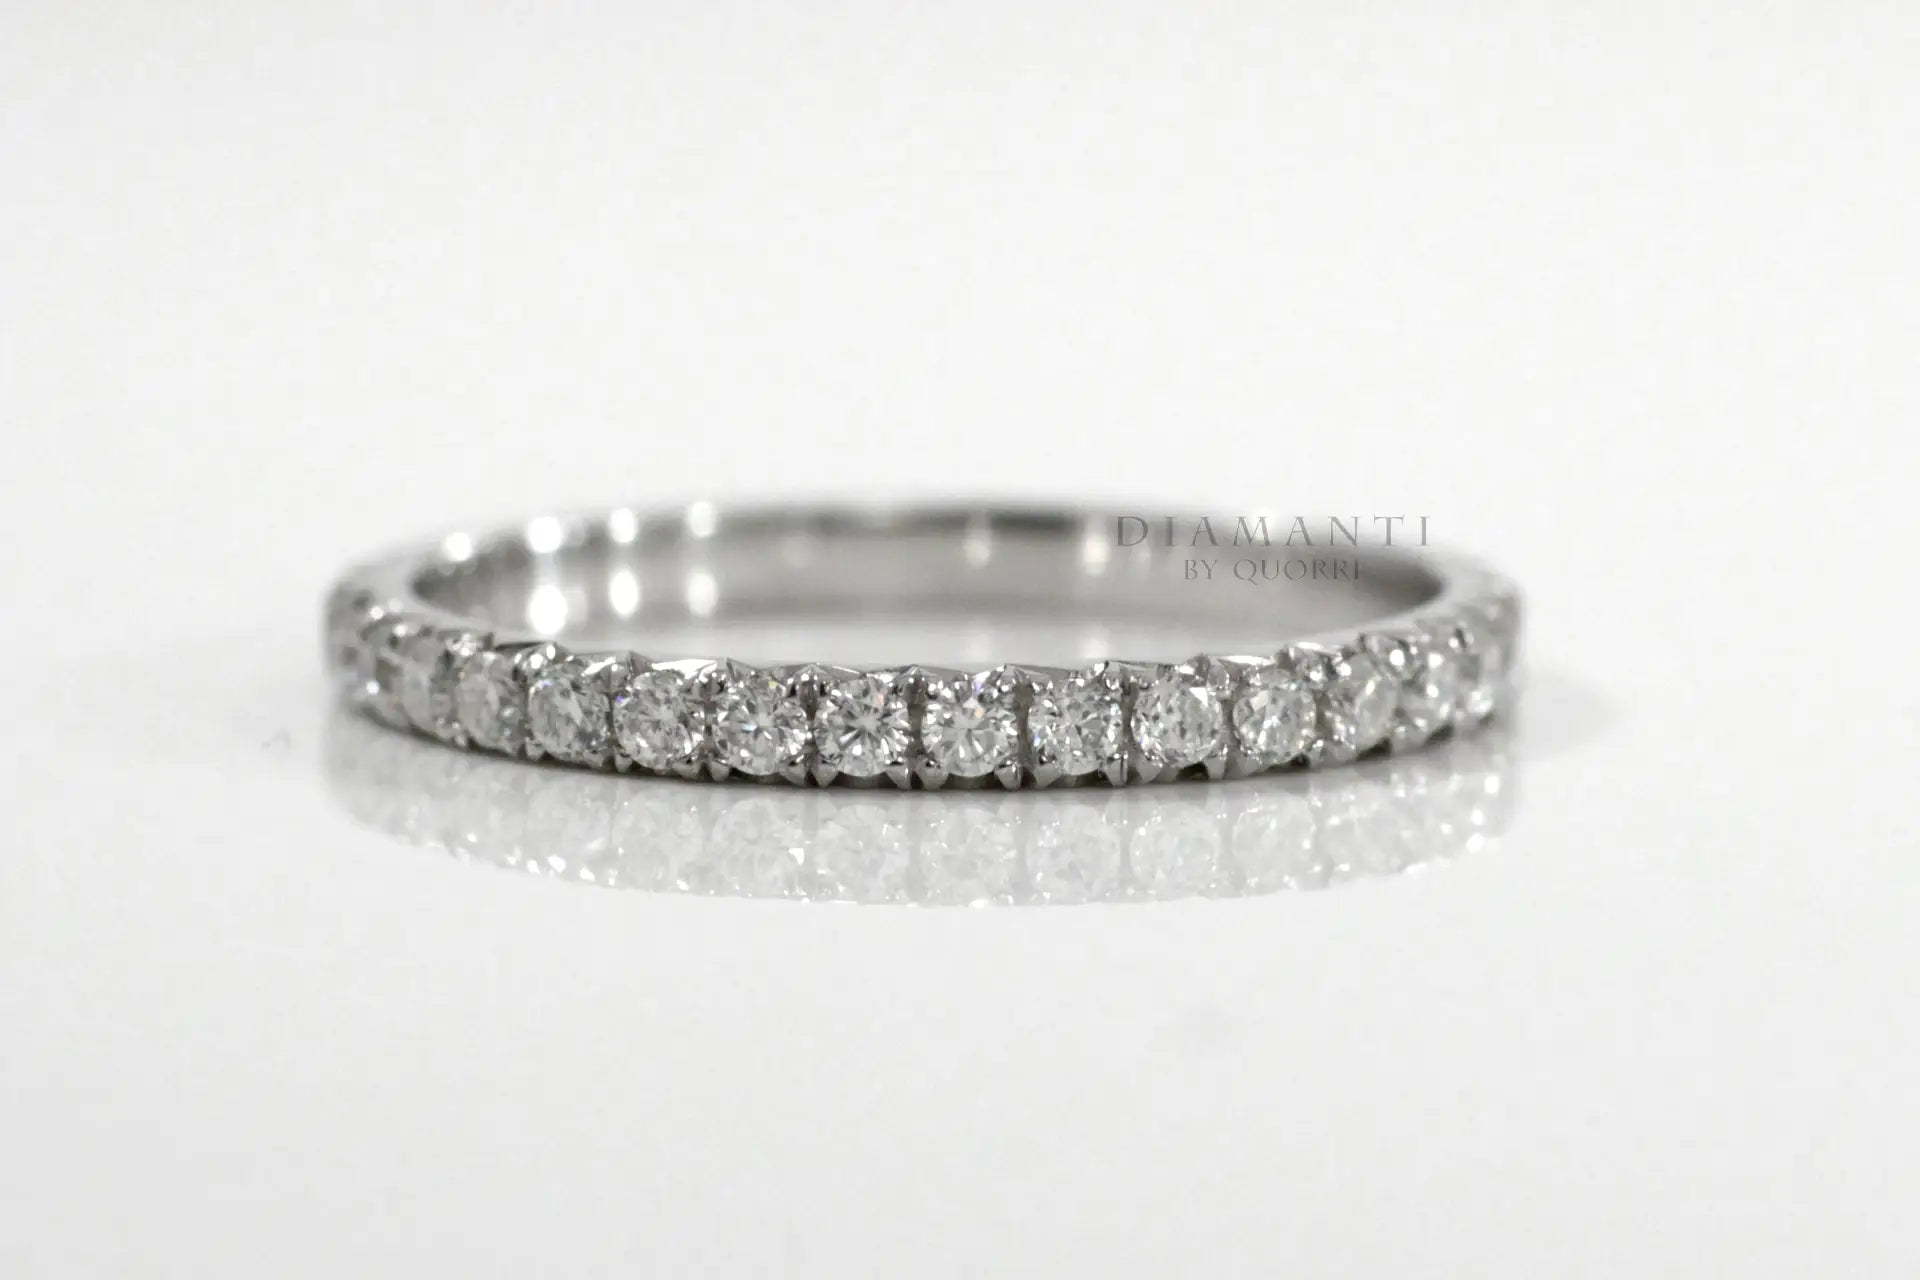 designer 18k white gold 1 carat to 4 carat diamond eternity rings Quorri Canada